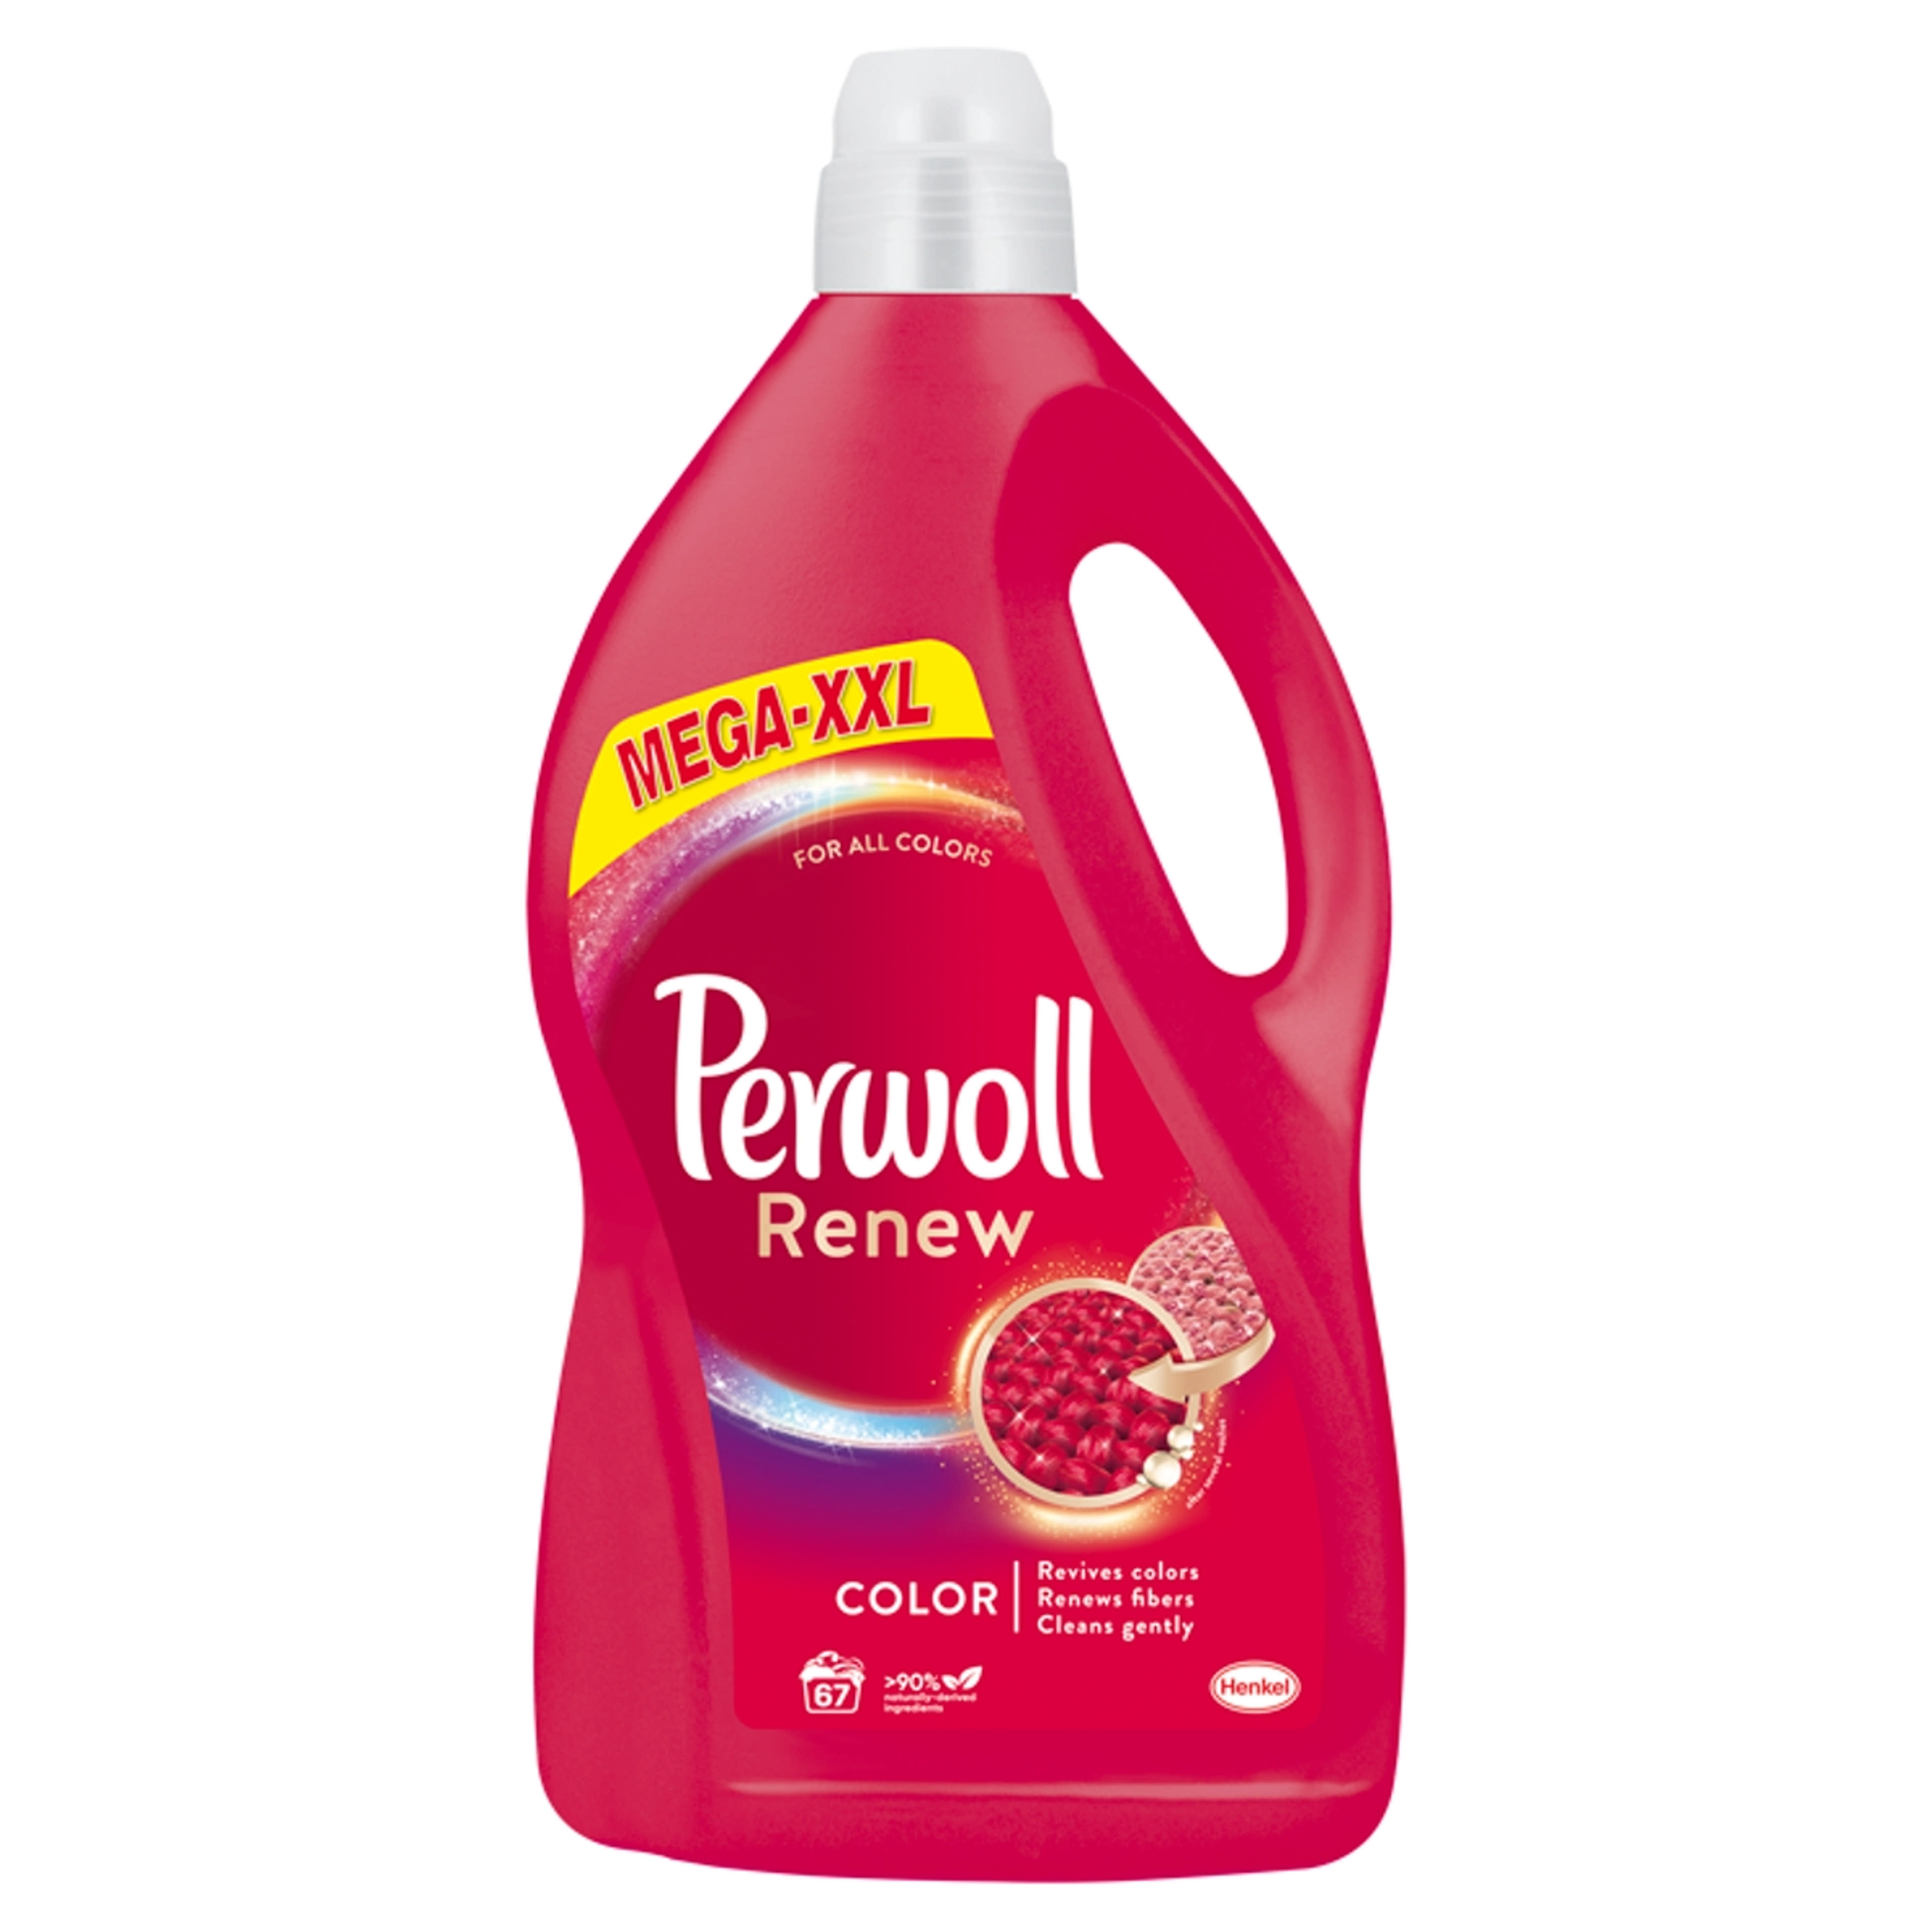 Perwoll Renew 3D Color kímélő mosószer, 67 mosás - 4,05 l